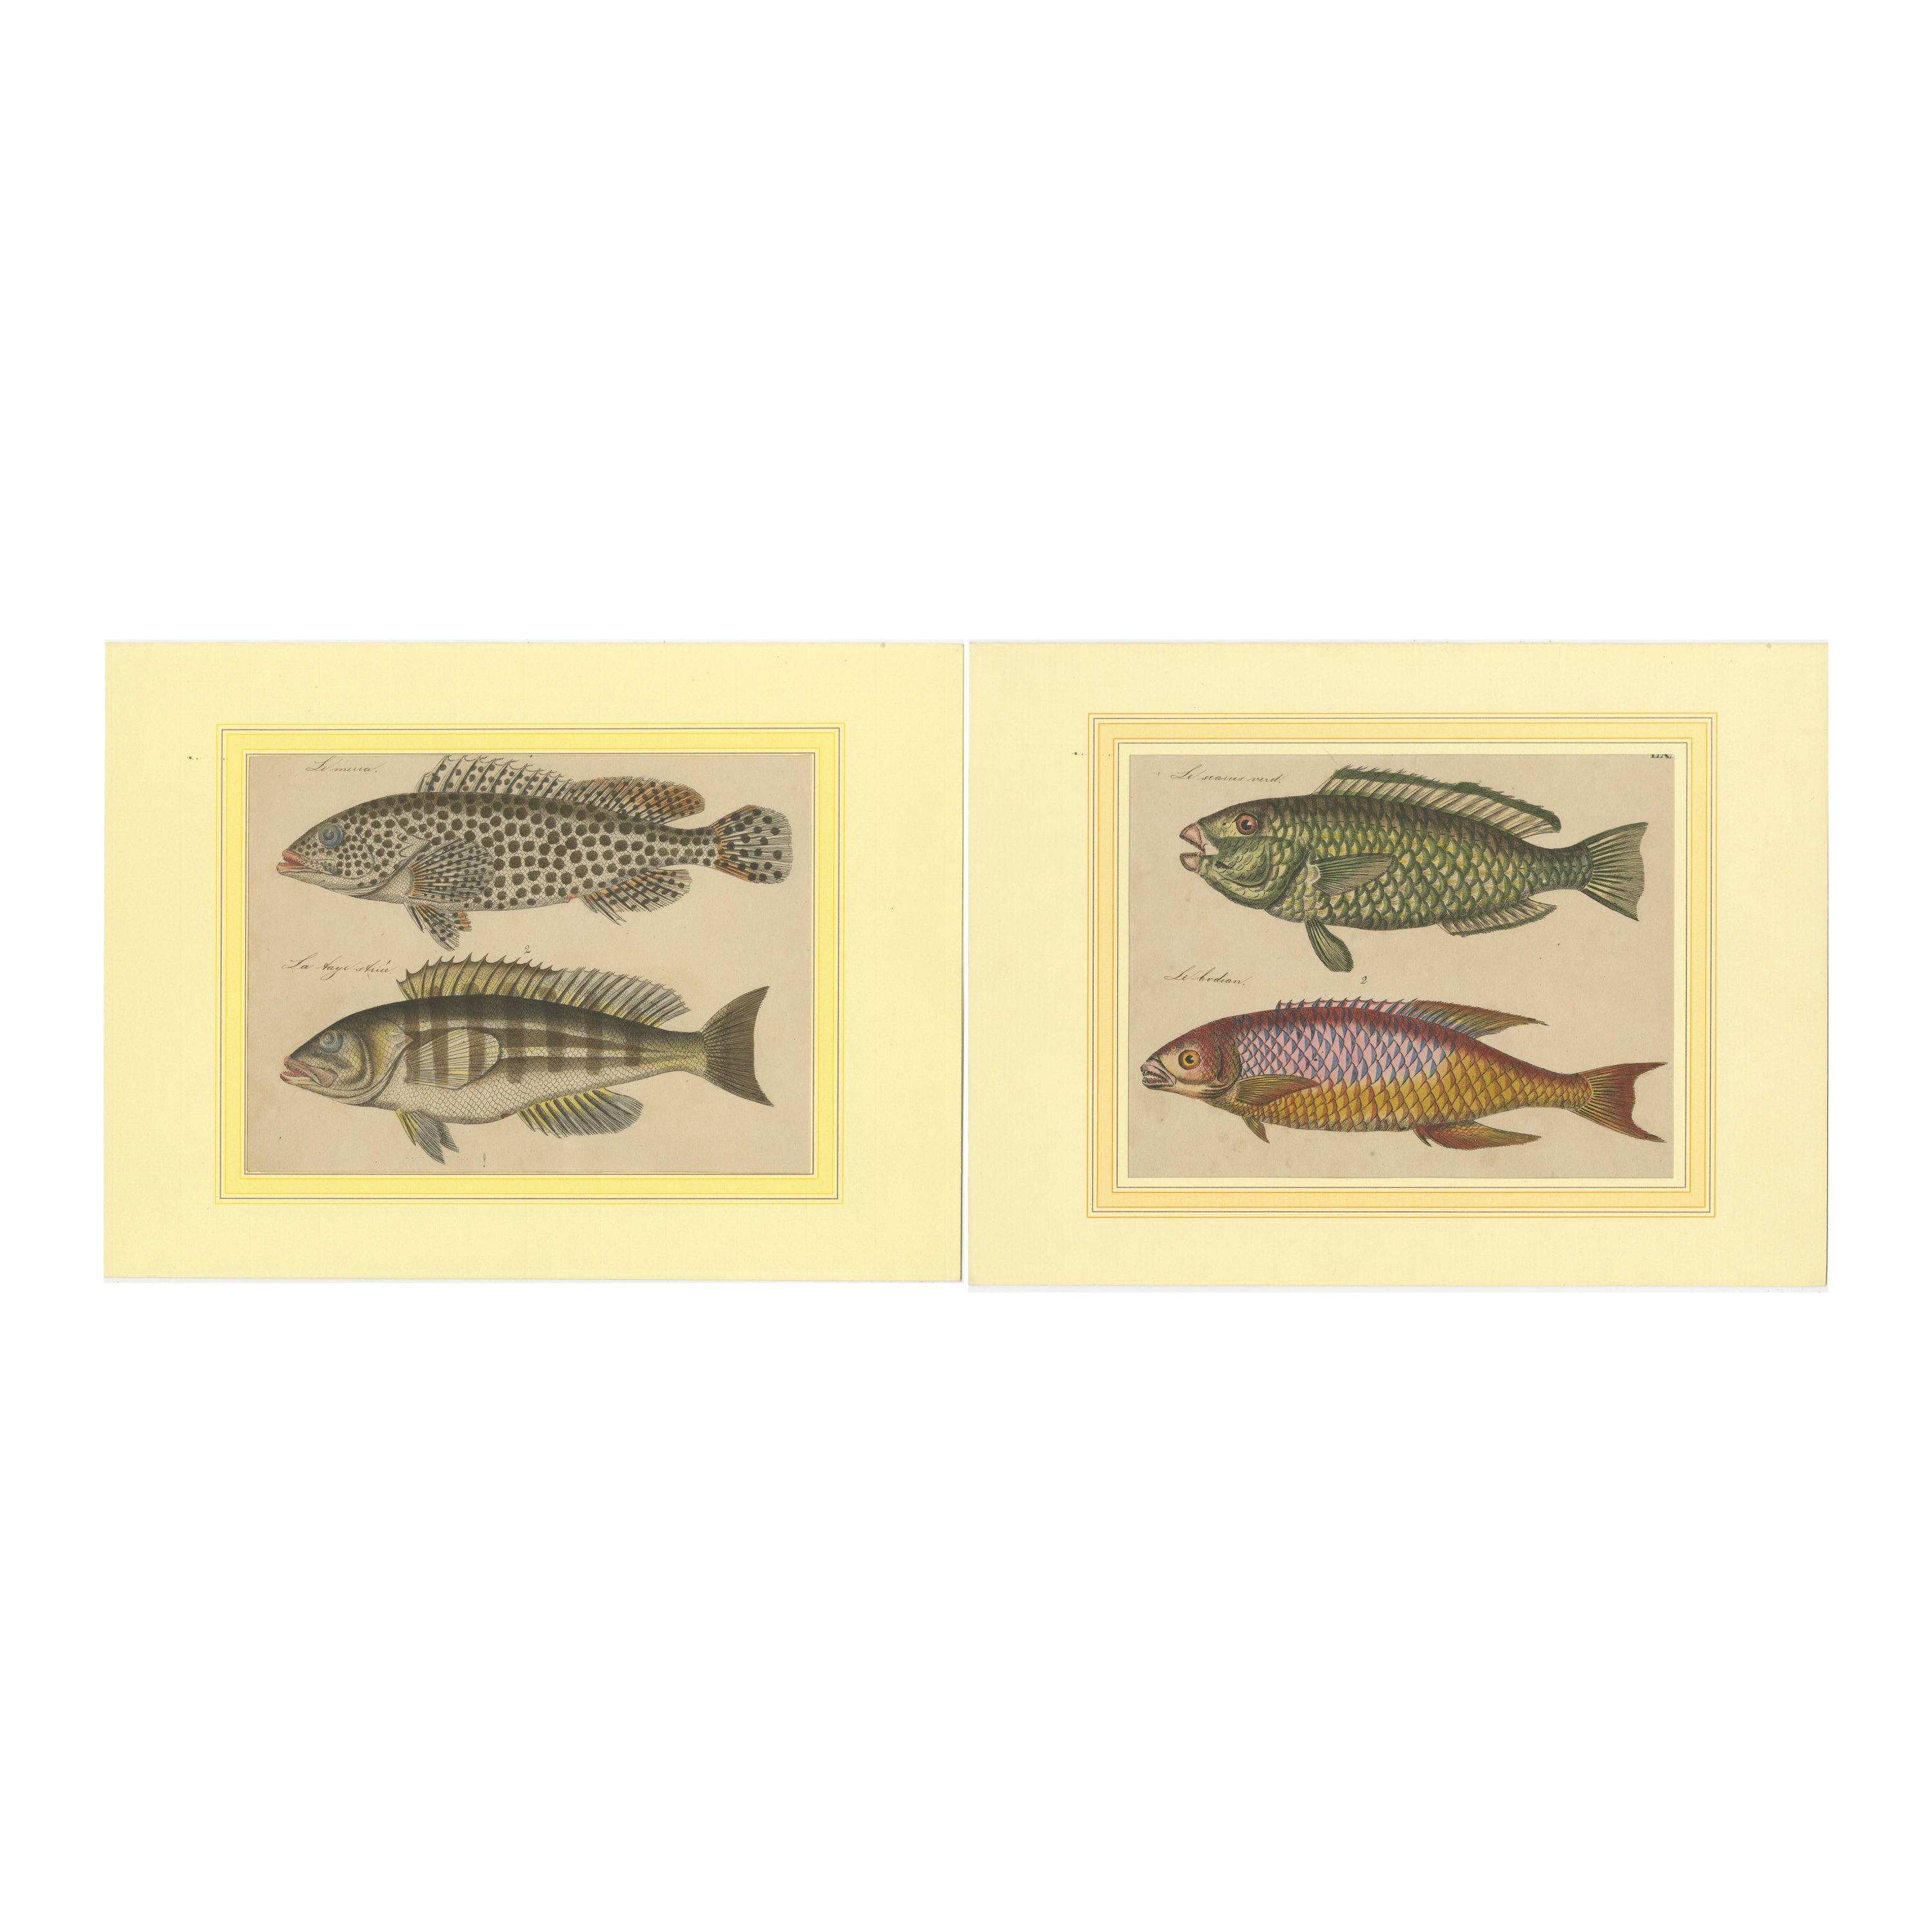 Splendor de la marine : gravures originales colorées à la main de poissons, 1819